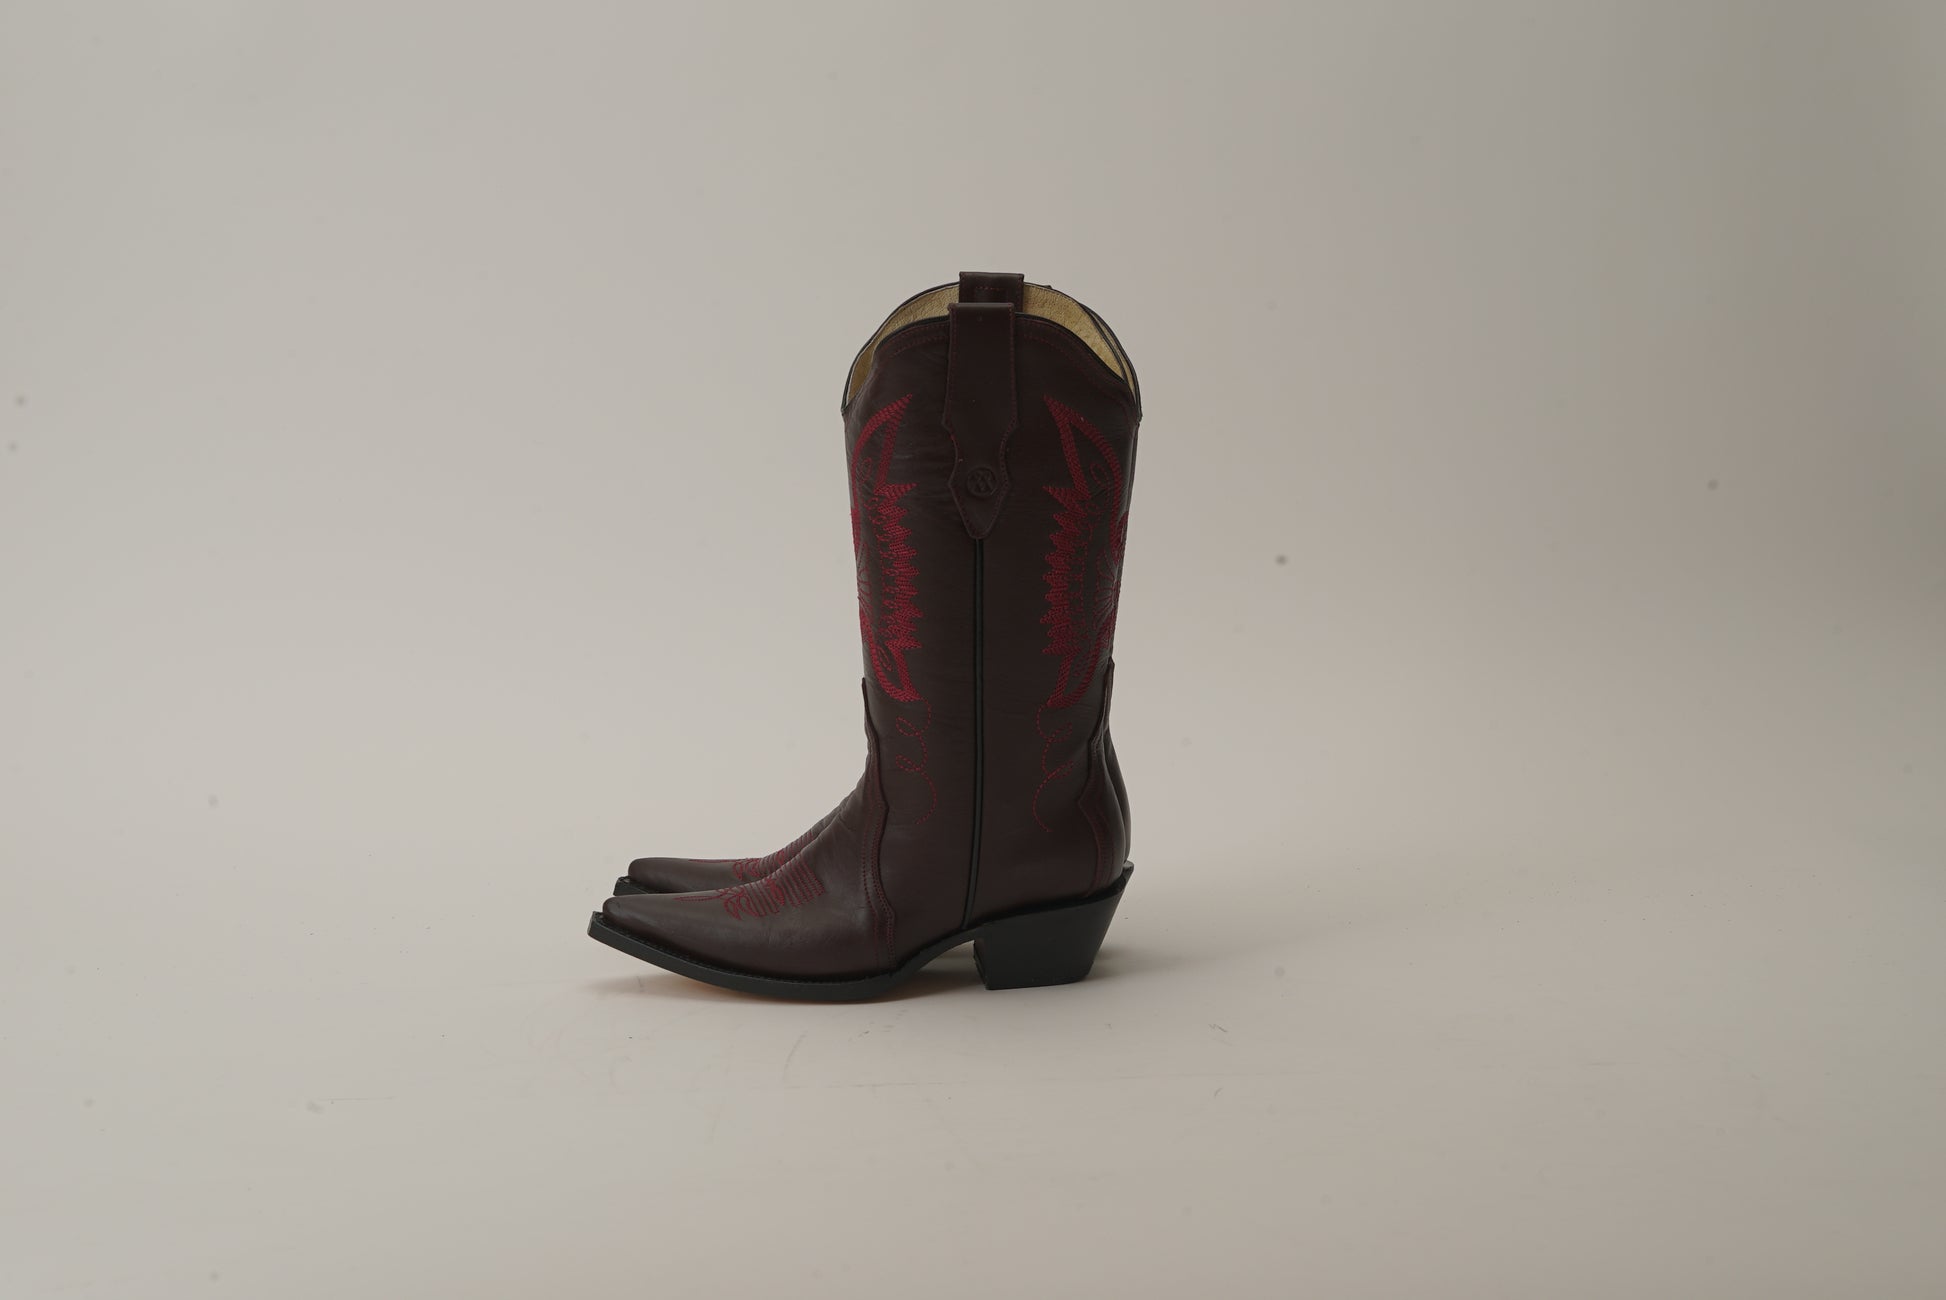 Jornada vino / Jornada burgundy boots – Messeguer